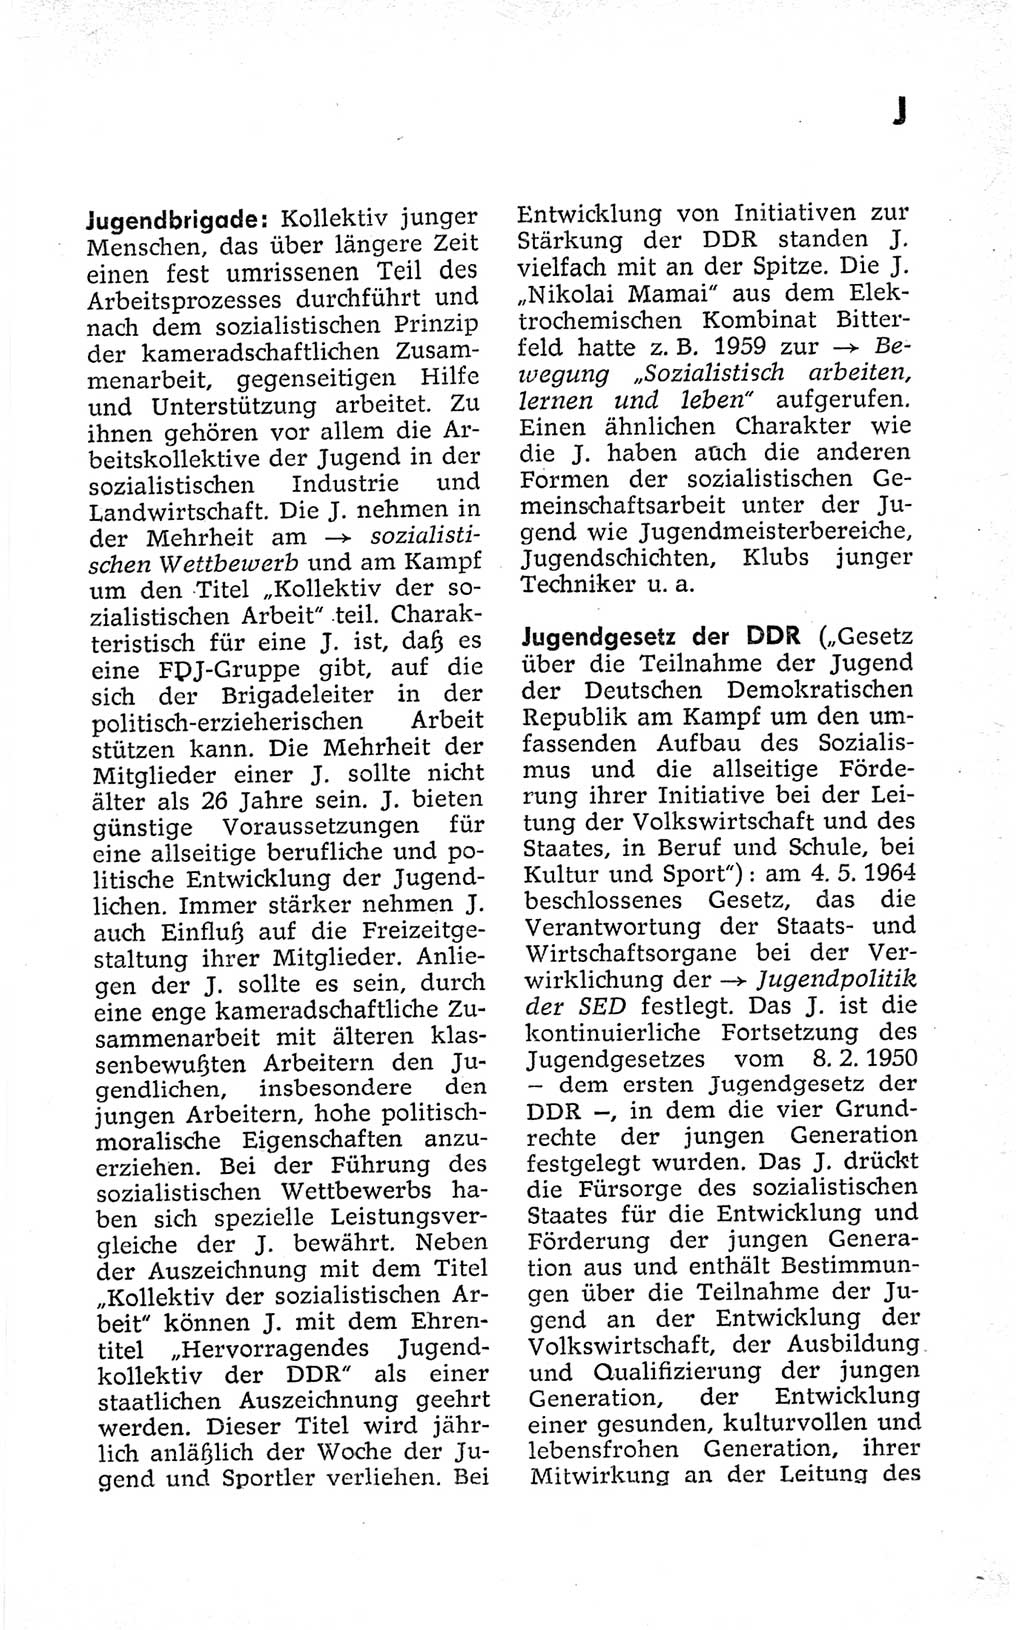 Kleines politisches Wörterbuch [Deutsche Demokratische Republik (DDR)] 1973, Seite 383 (Kl. pol. Wb. DDR 1973, S. 383)